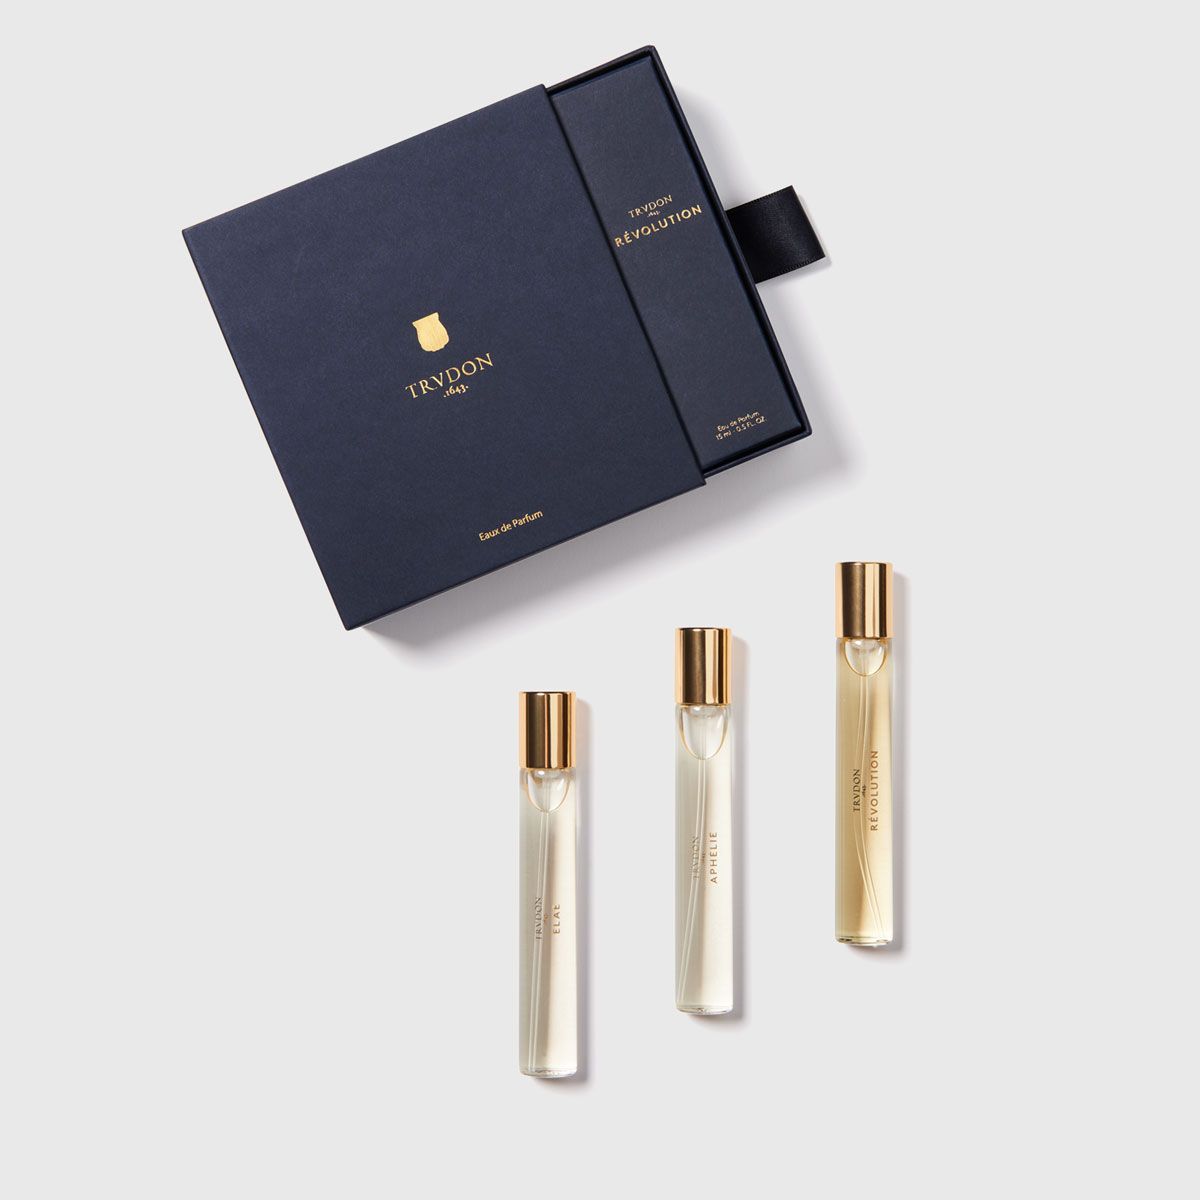 Oscar: Forever Luxury Perfume Gift Set For Women - Pack of 6 - 20ml Each